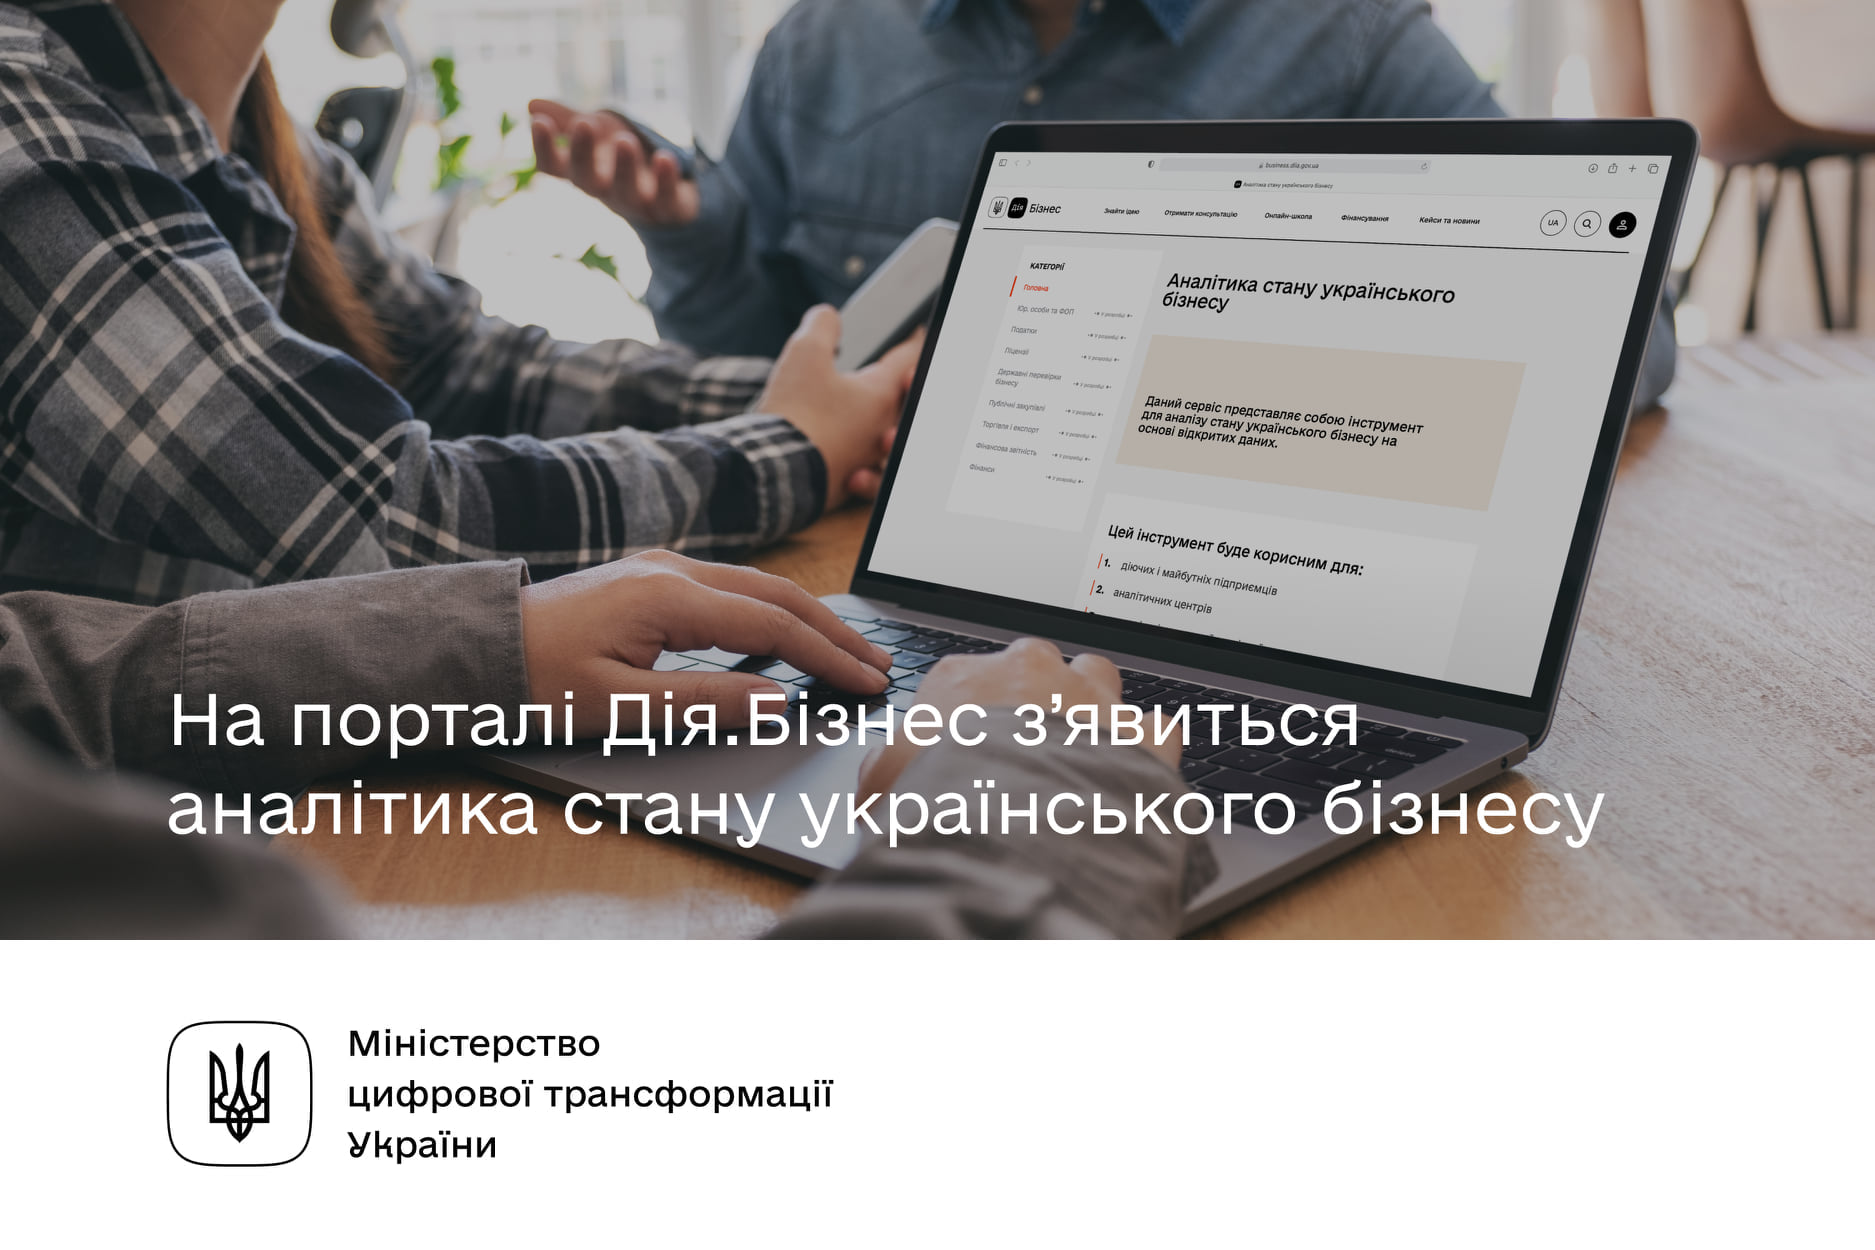 Аналітика стану українського бізнесу на порталі «Дія.Бізнес»